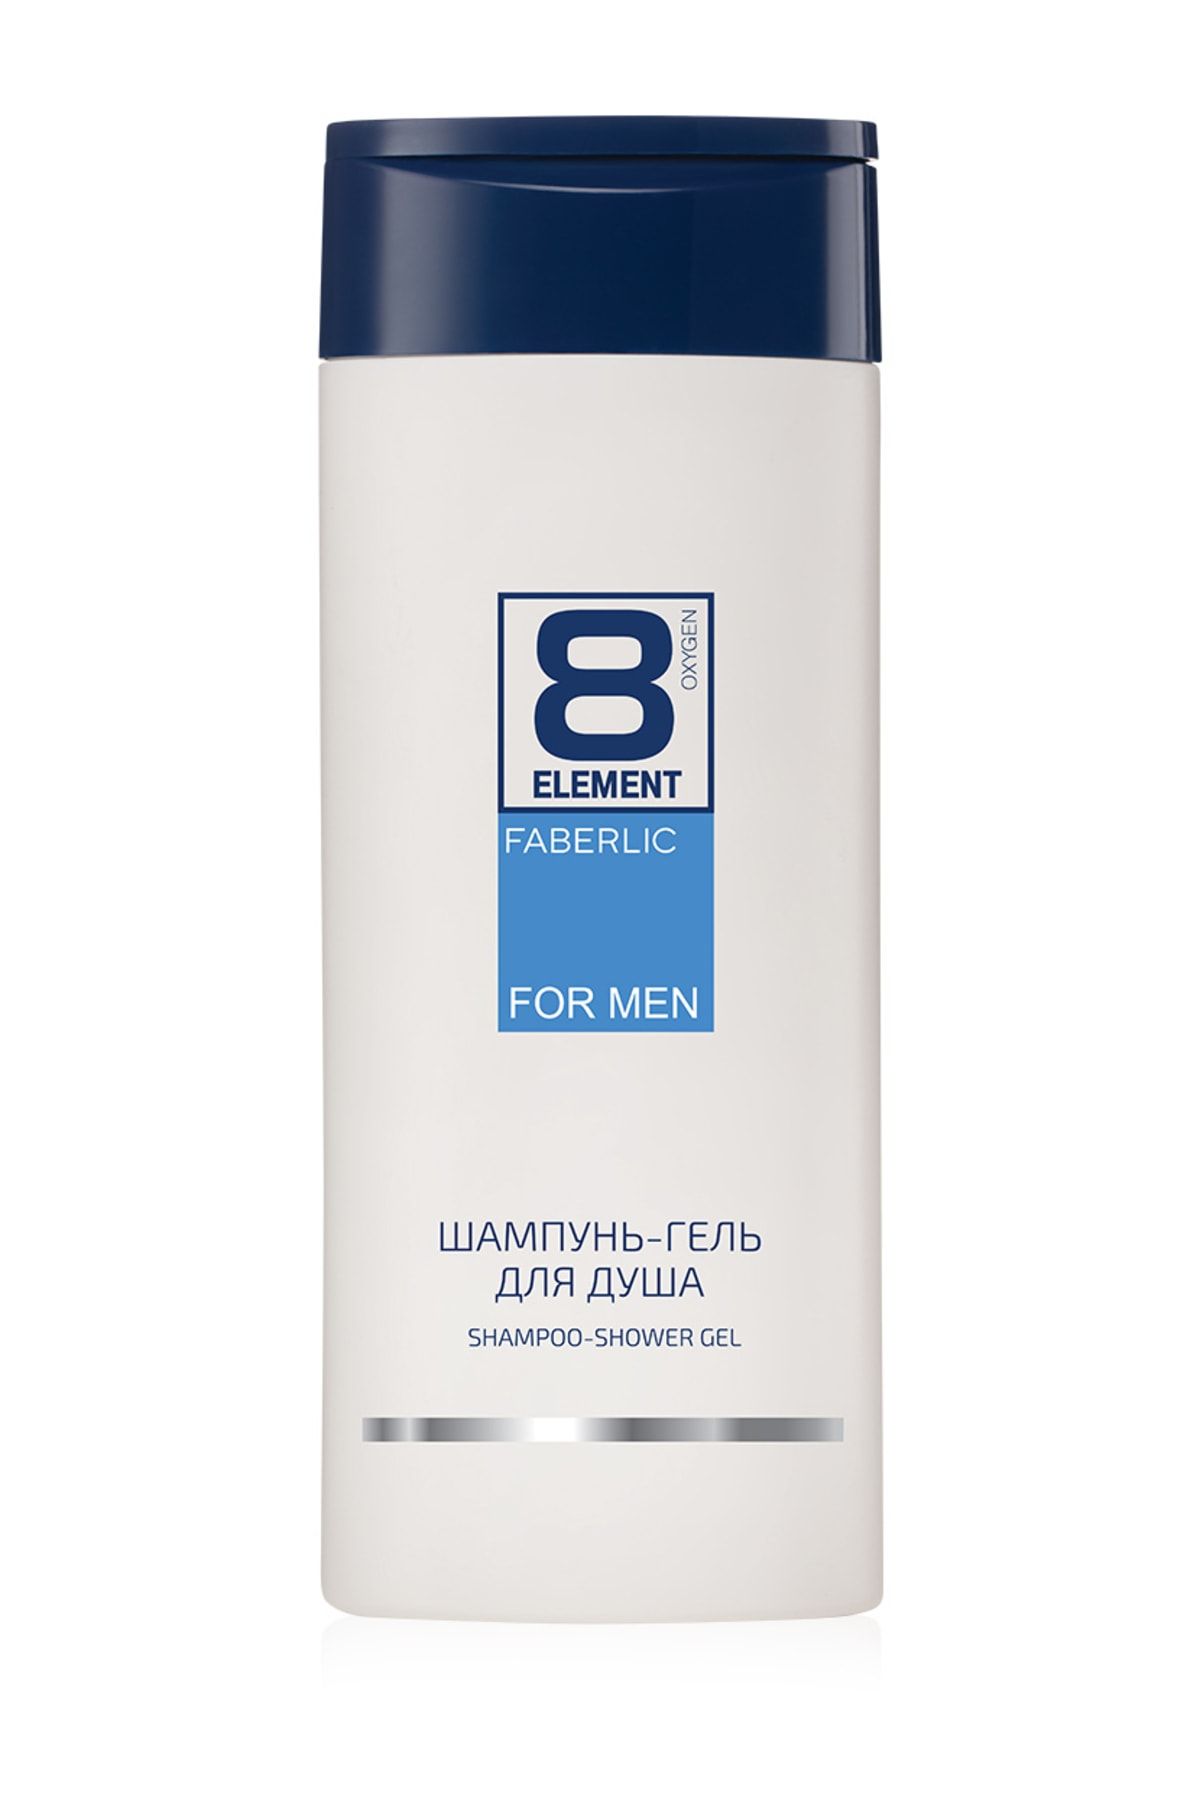 Faberlic 8 Element Erkekler İçin 2si Bir Arada Şampuan ve Duş Jeli 400ml